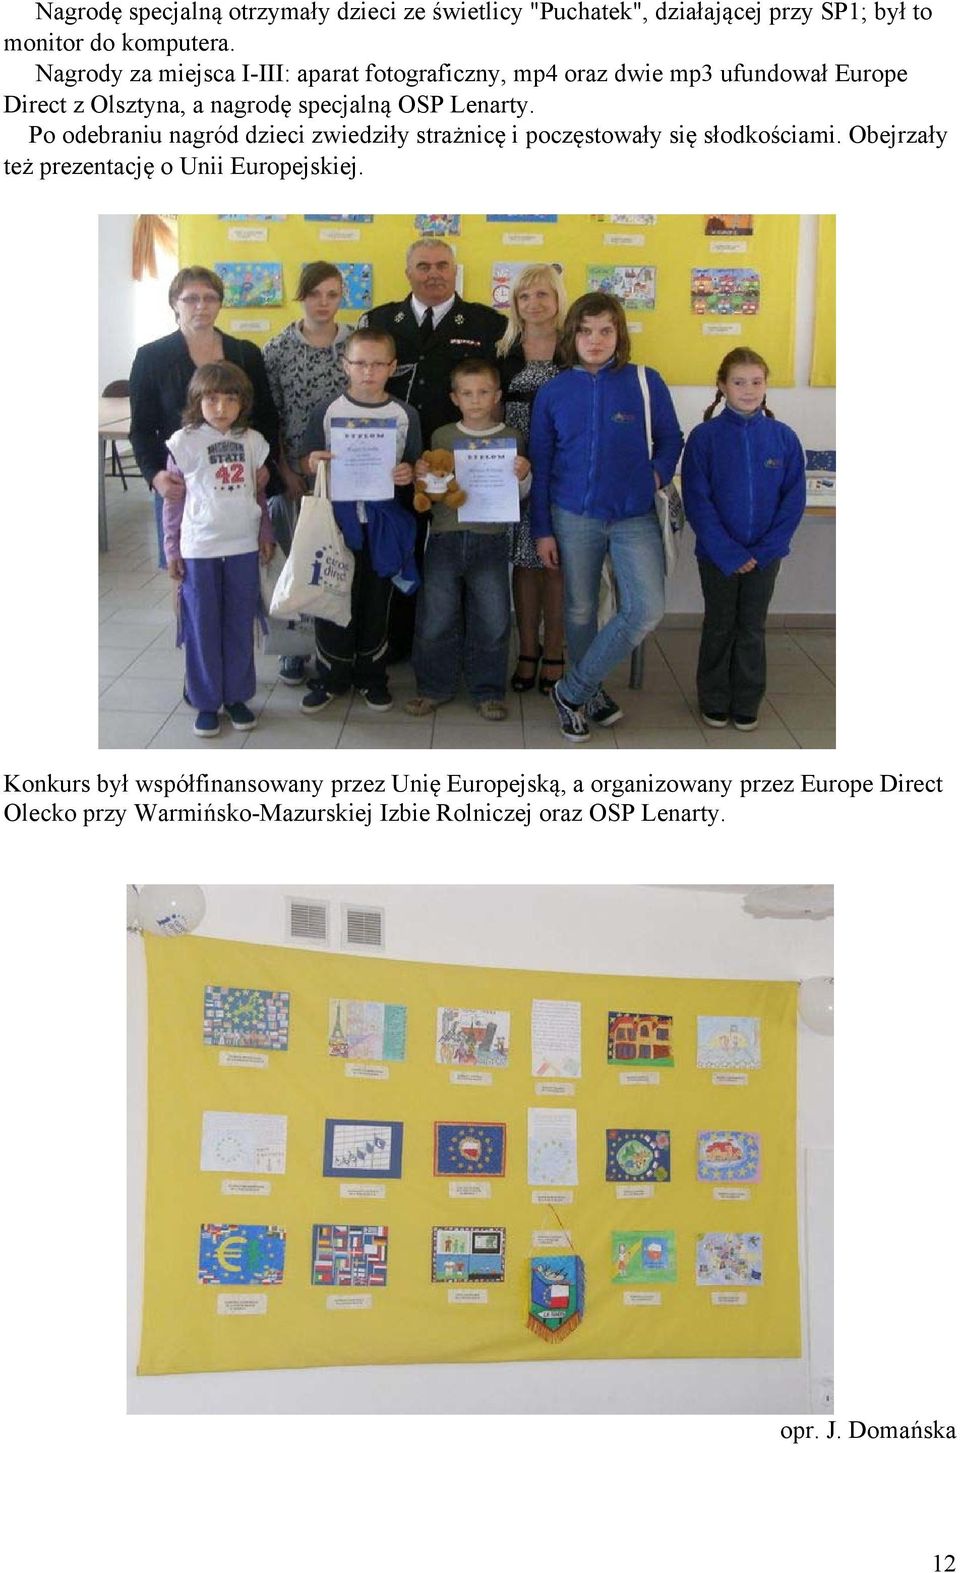 Po odebraniu nagród dzieci zwiedziły strażnicę i poczęstowały się słodkościami. Obejrzały też prezentację o Unii Europejskiej.